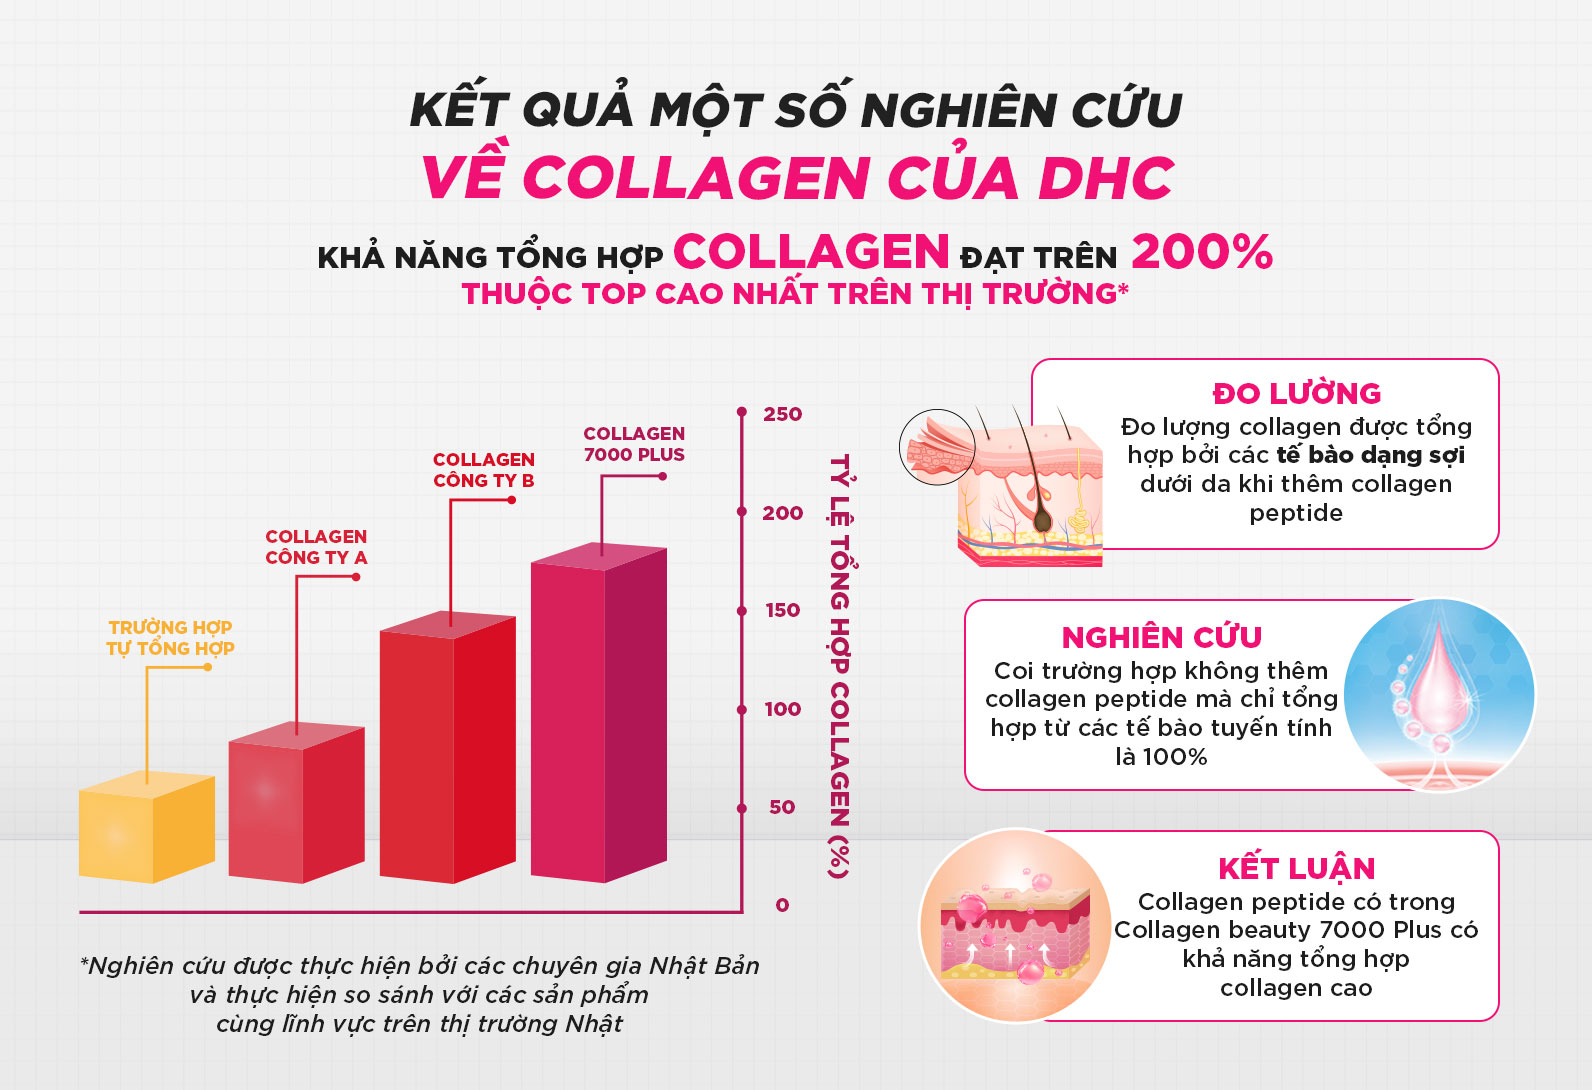 Ưu điểm collagen nước DHC